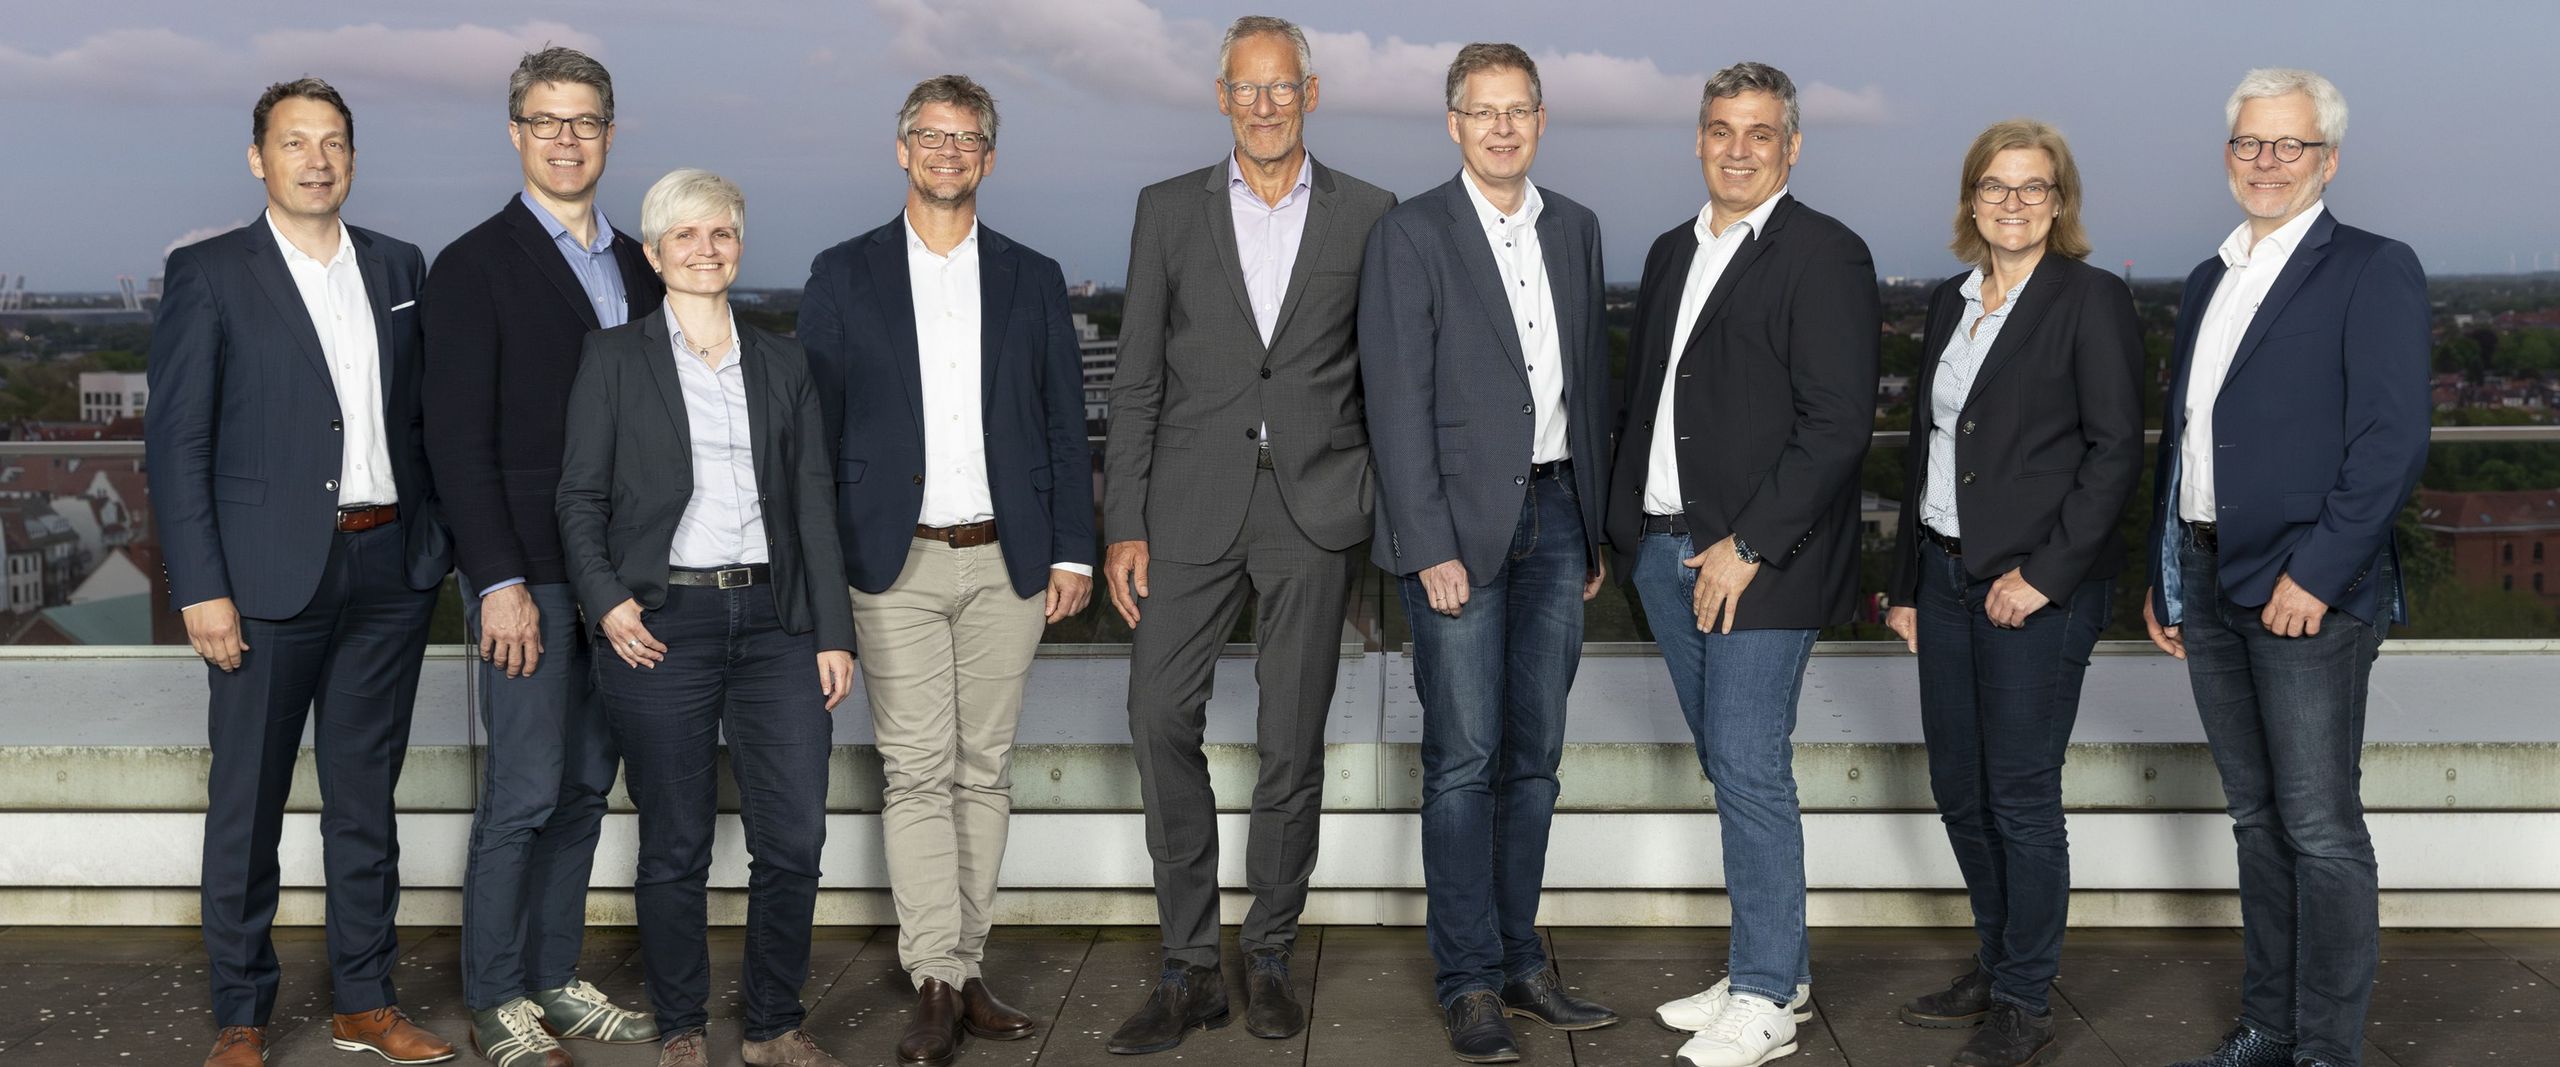 Gruppenbild des neuen Vorstandes der Ingenieurkammer Bremen